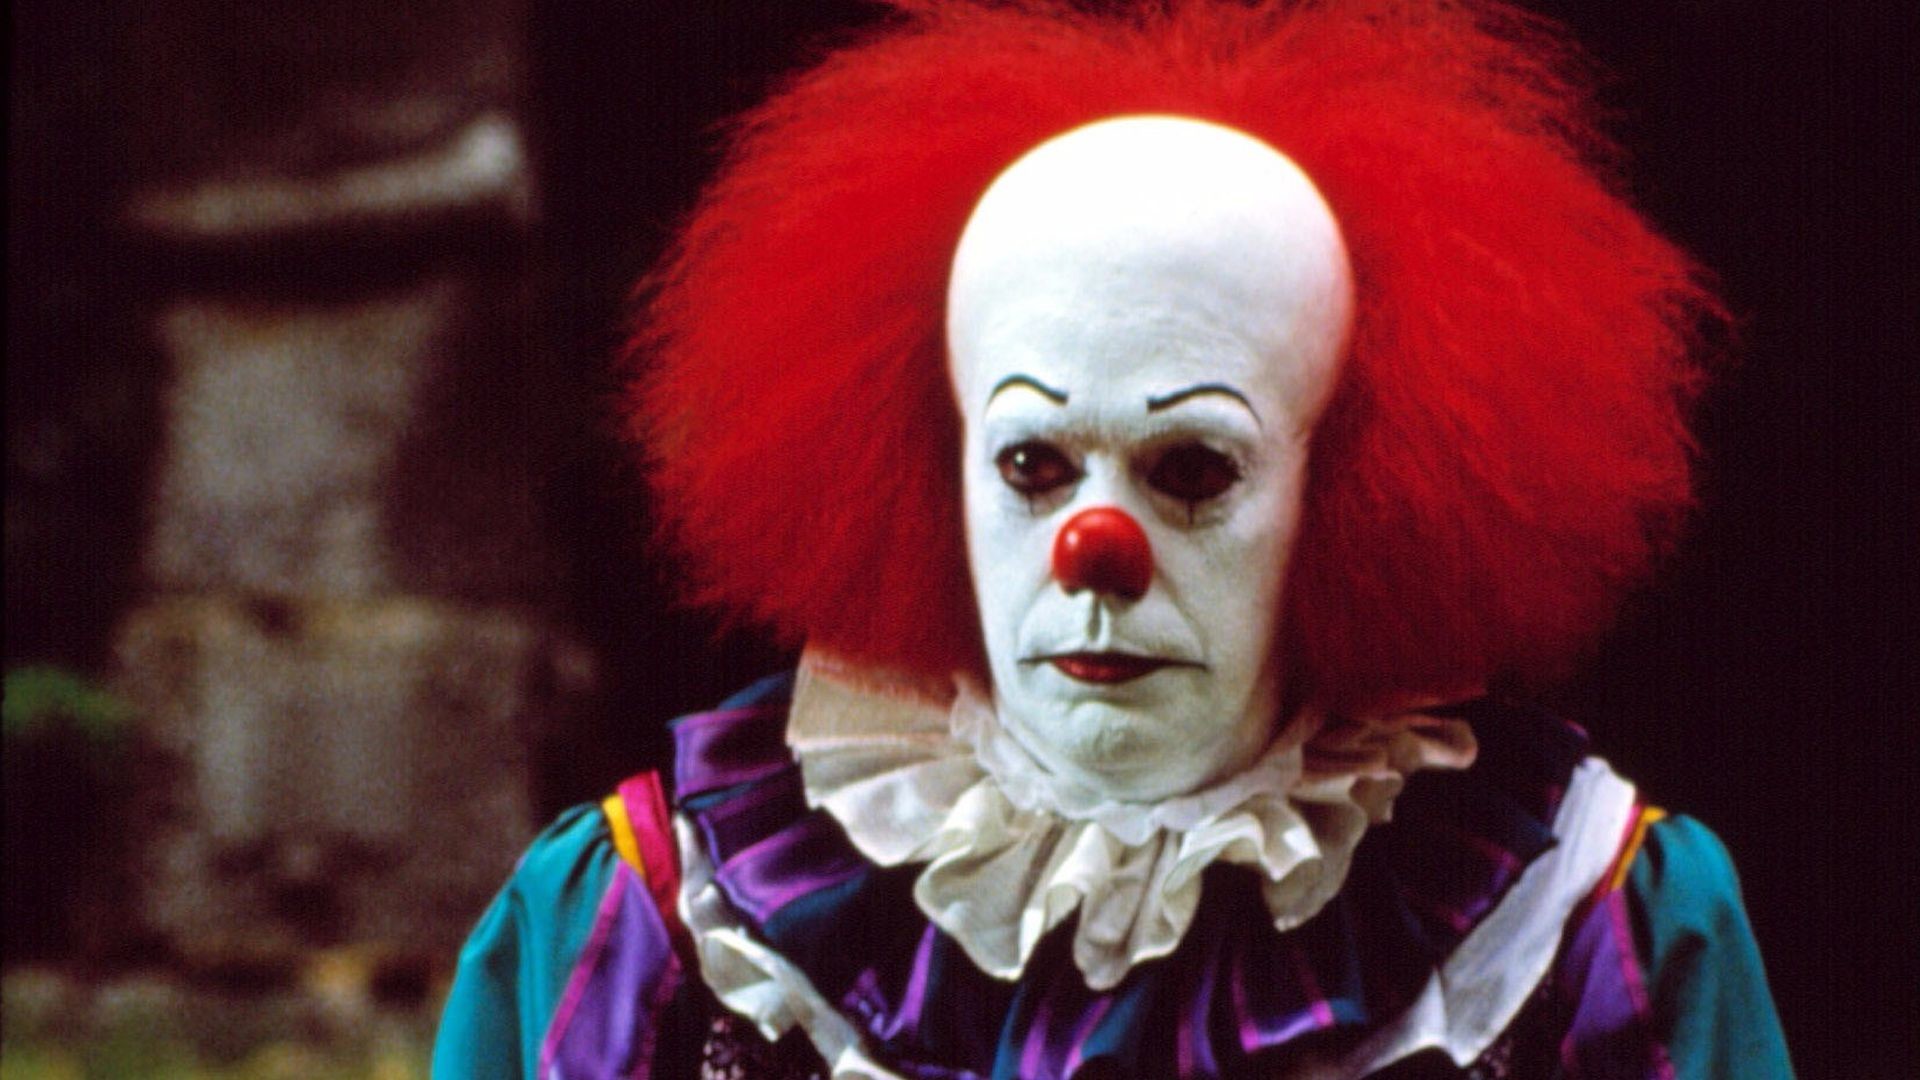 1920x1080 Will Poulter macht "Es": Horror-Remake hat Clown gefunden | Promiflash.de